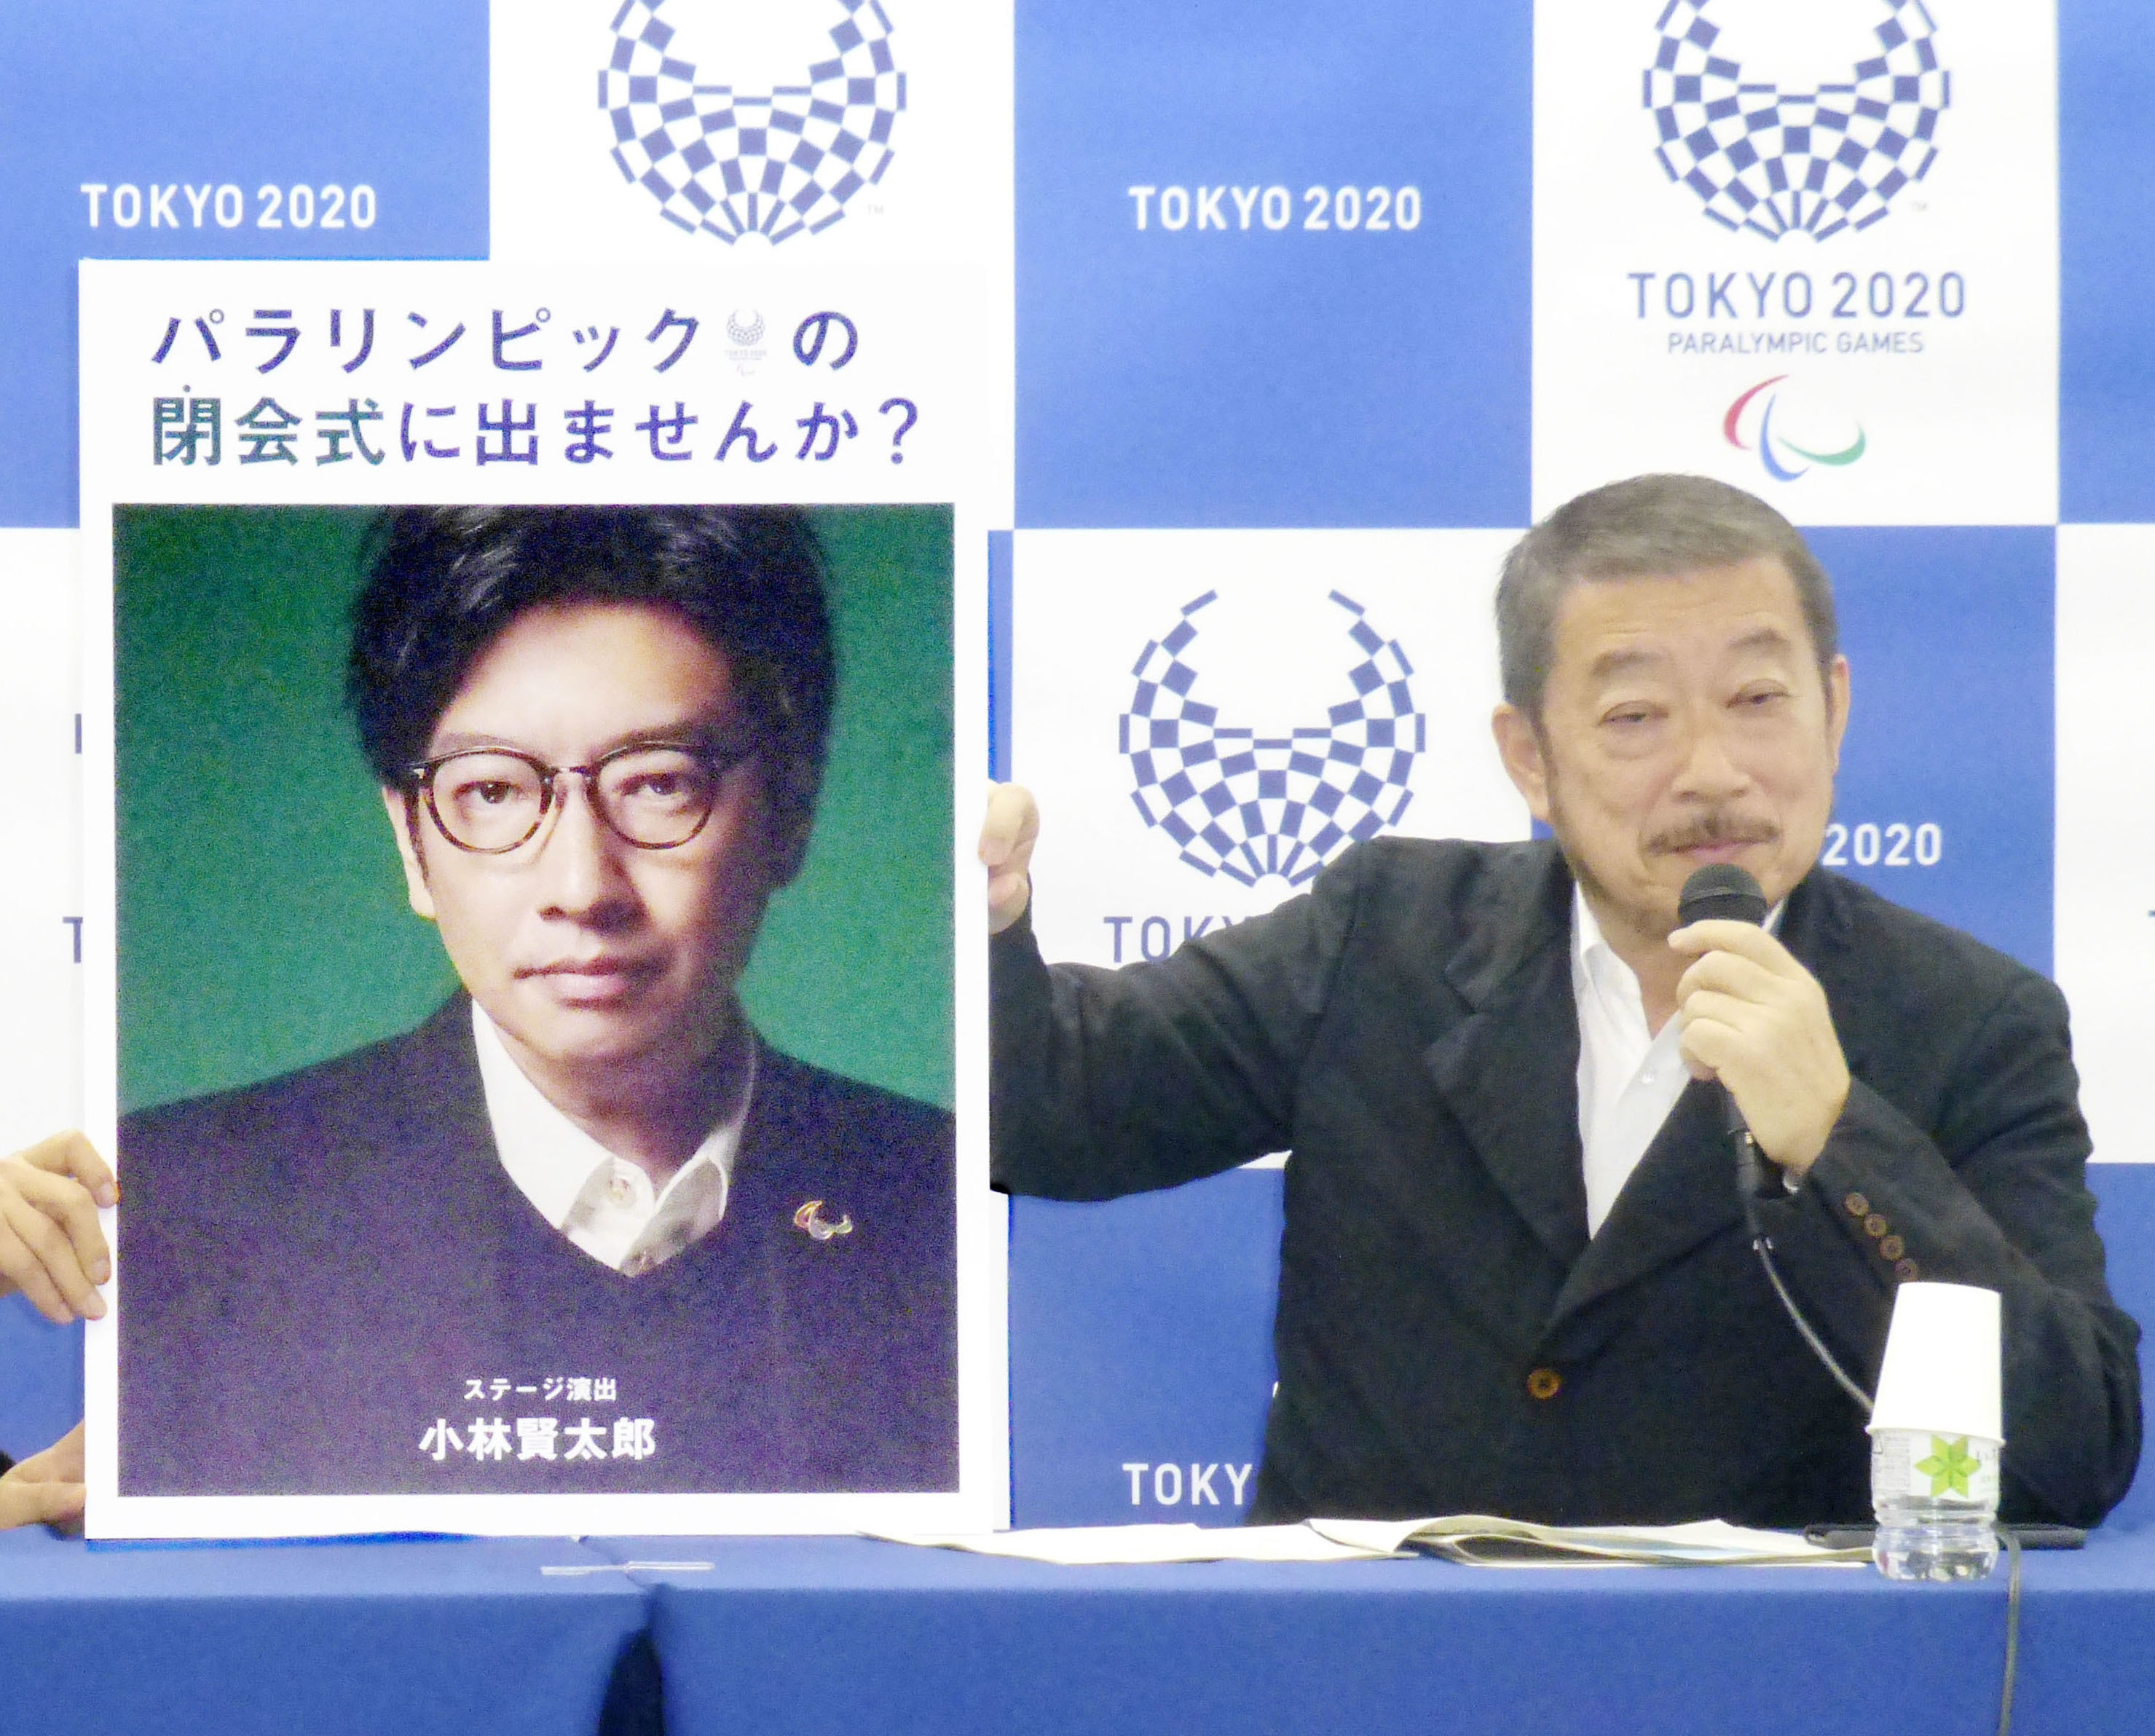 도쿄올림픽  개·폐회식 총괄 책임자인 사사키 히로시(오른쪽)이 2019년 12월 기자회견에서 개막식 연출 담당자 고바야시 겐타로를 소개하고 있다. 두 사람 모두 부적절한 언행으로 중도 사퇴했다. (출처=일본 교도통신)